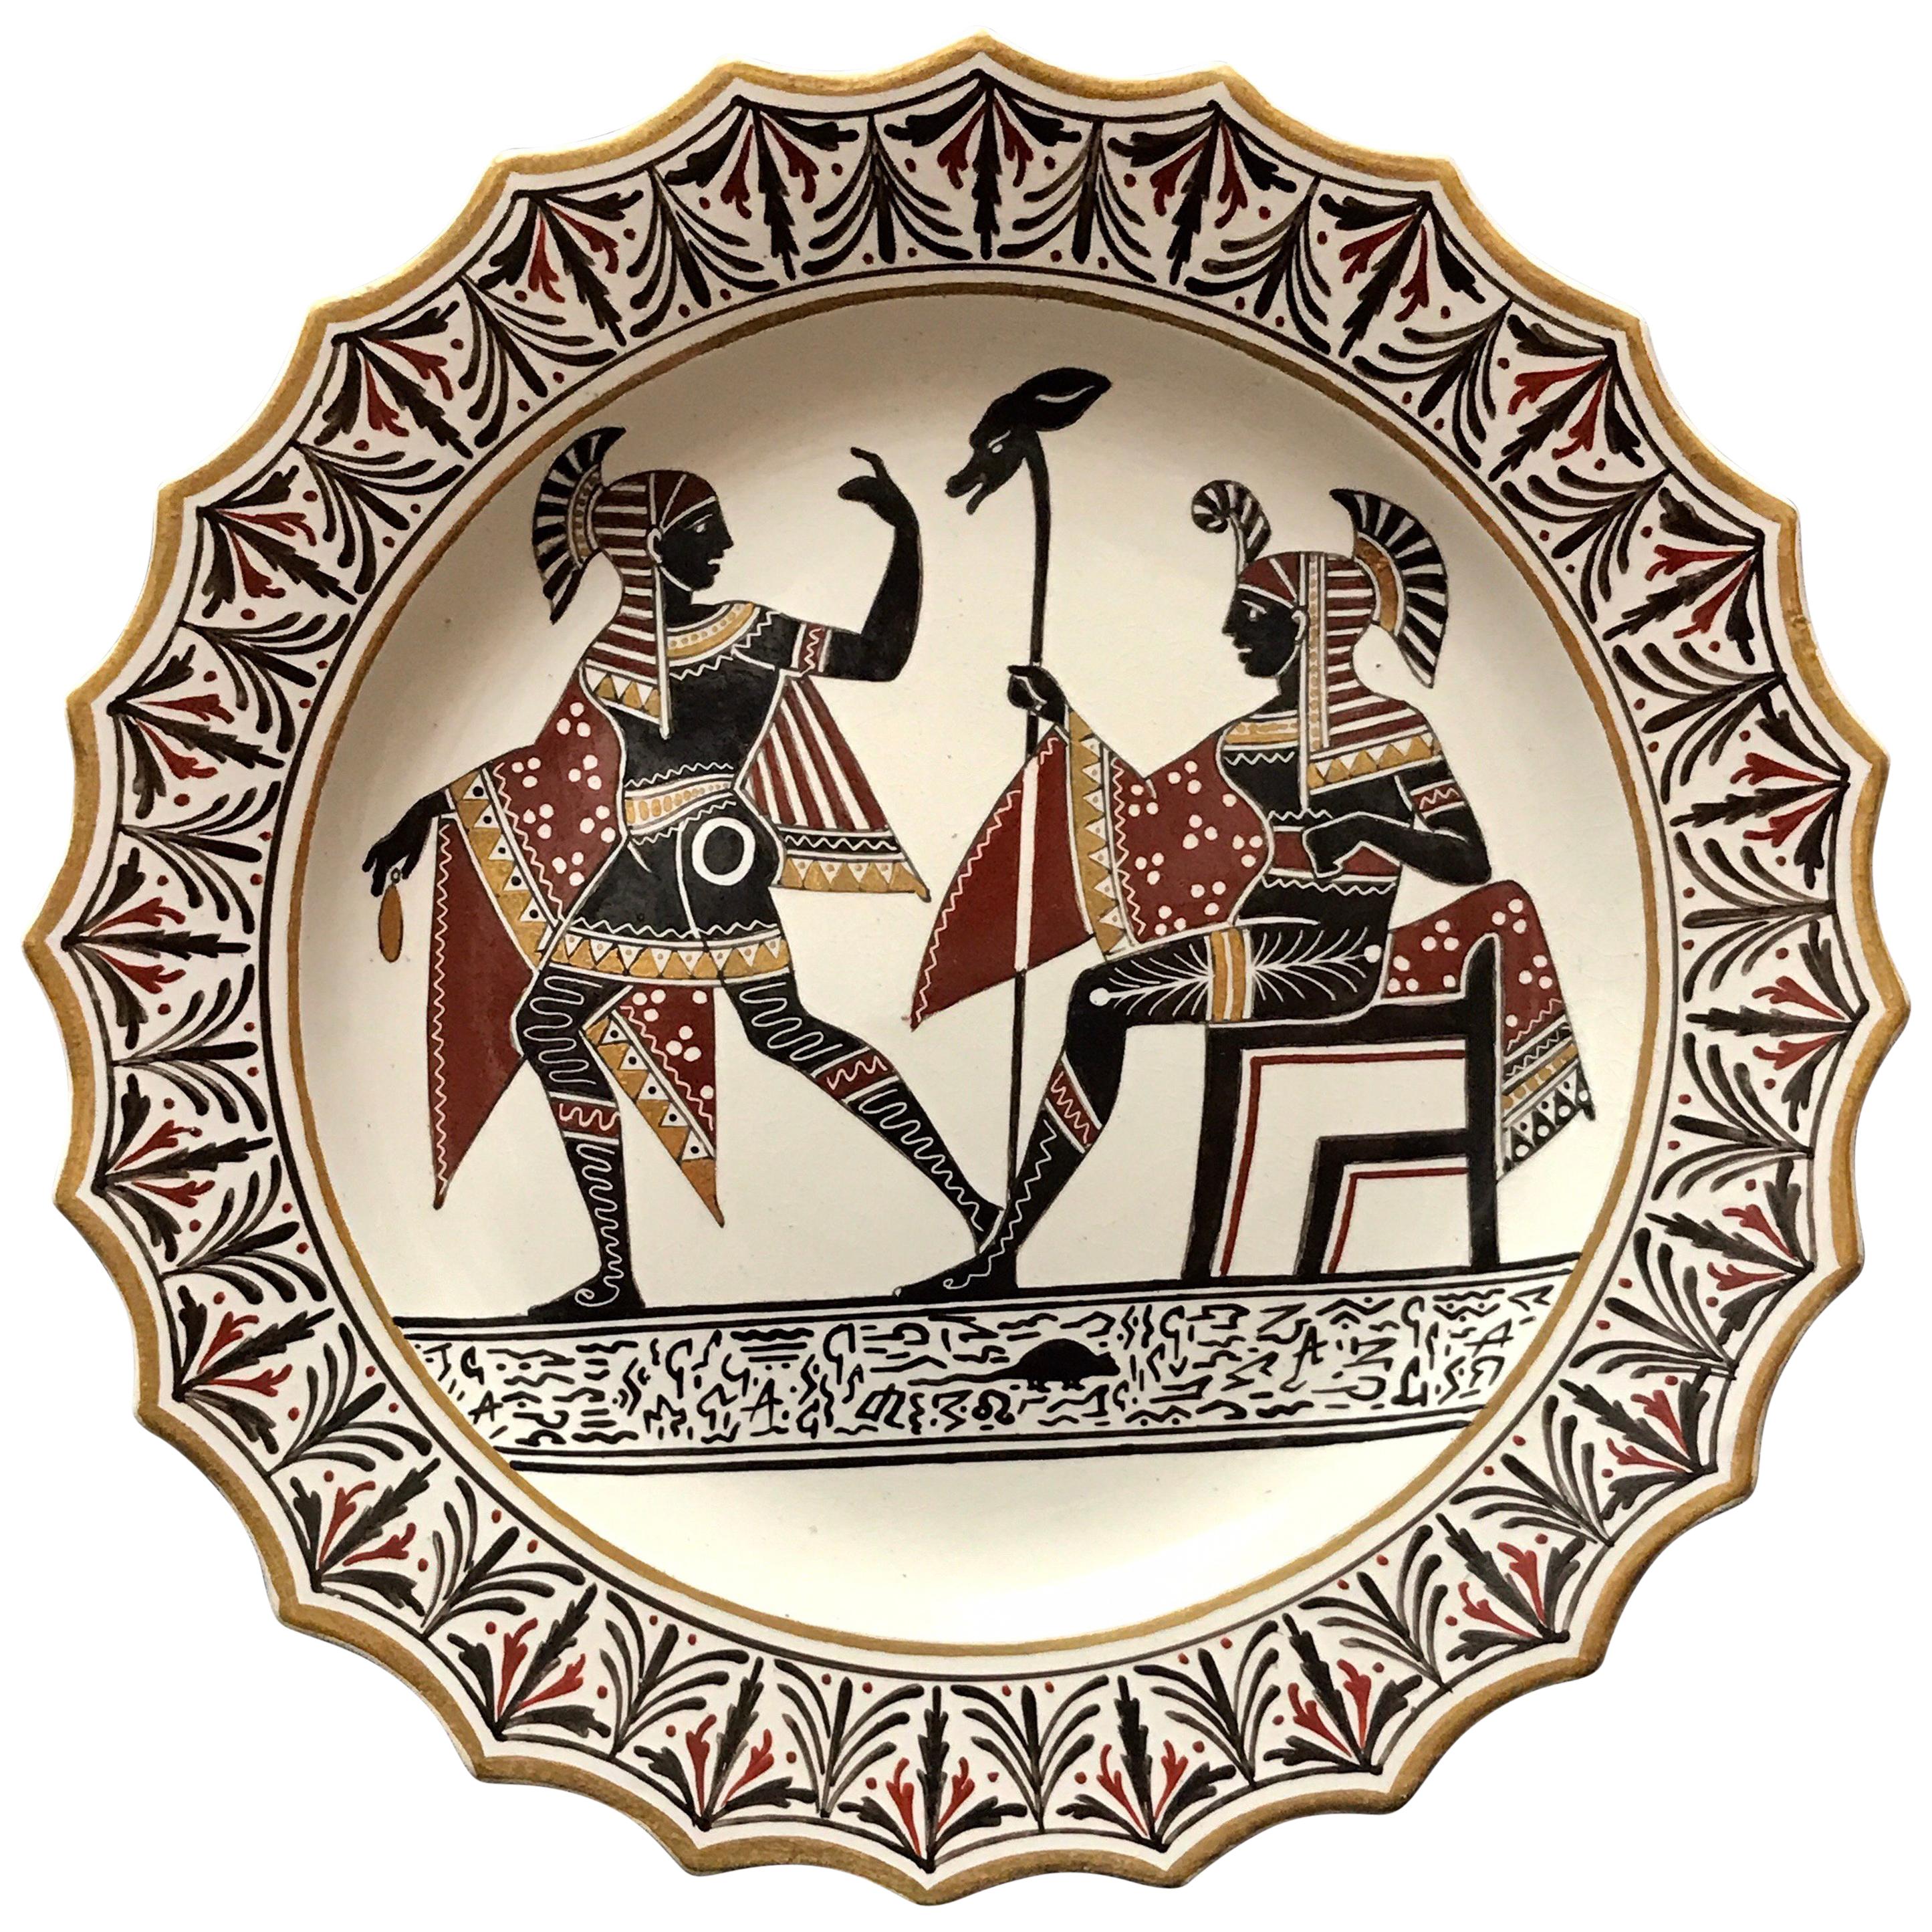 Giustiniani-Töpferwarenteller mit ägyptischem Motiv und vergoldeten Highlights, Rodent